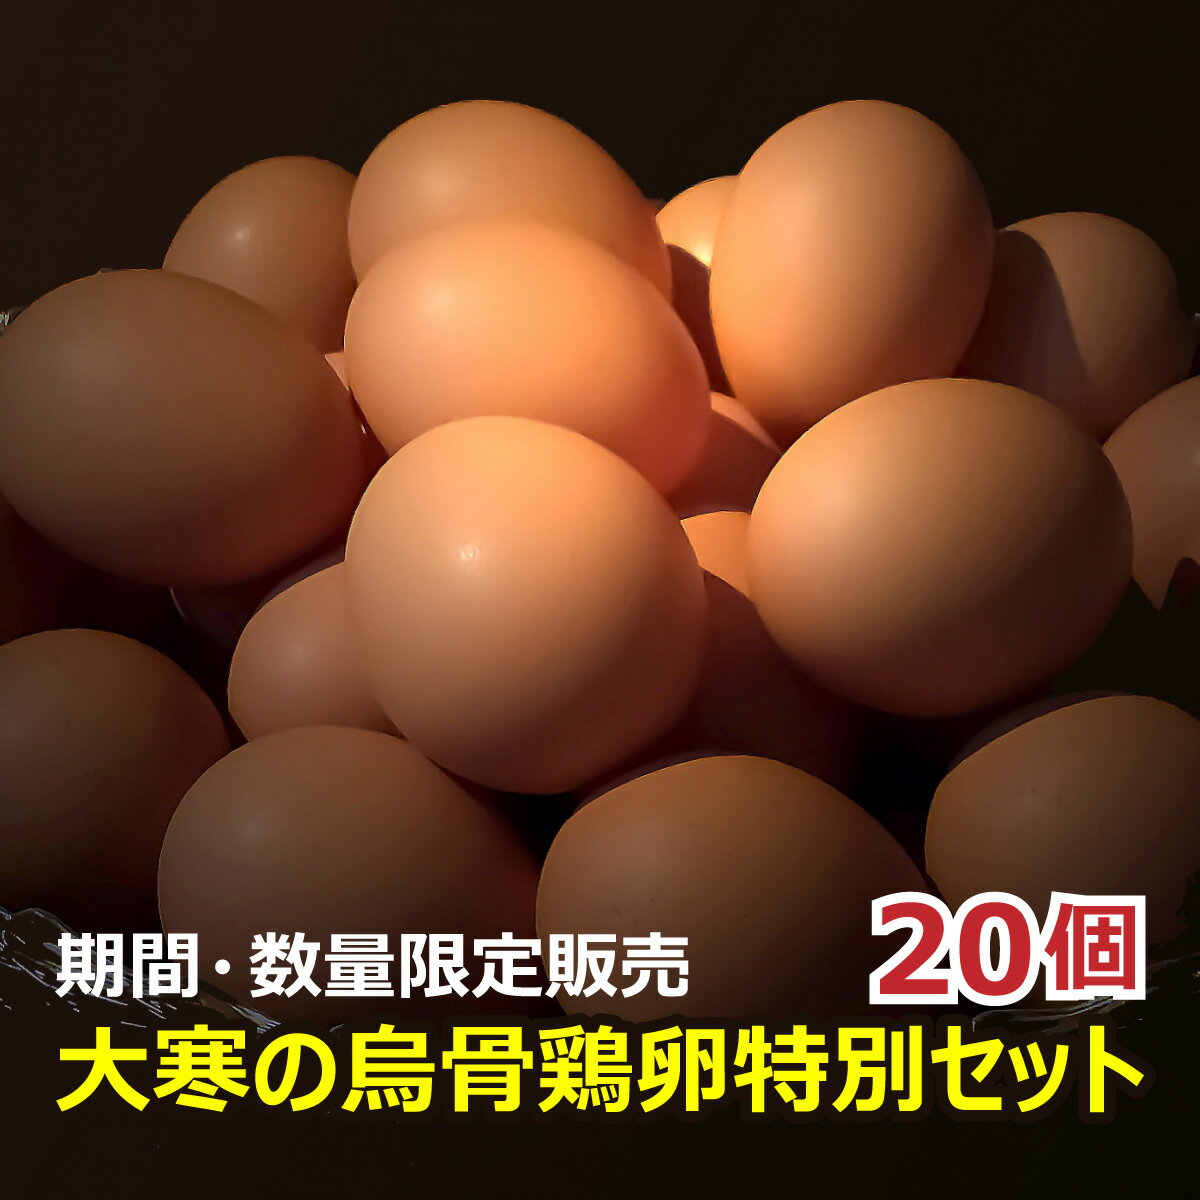 大寒の烏骨鶏卵20個 （ 大寒のたまご 大寒卵 烏骨鶏の卵 うこっけいのたまご ウコッケイのタマゴ ）